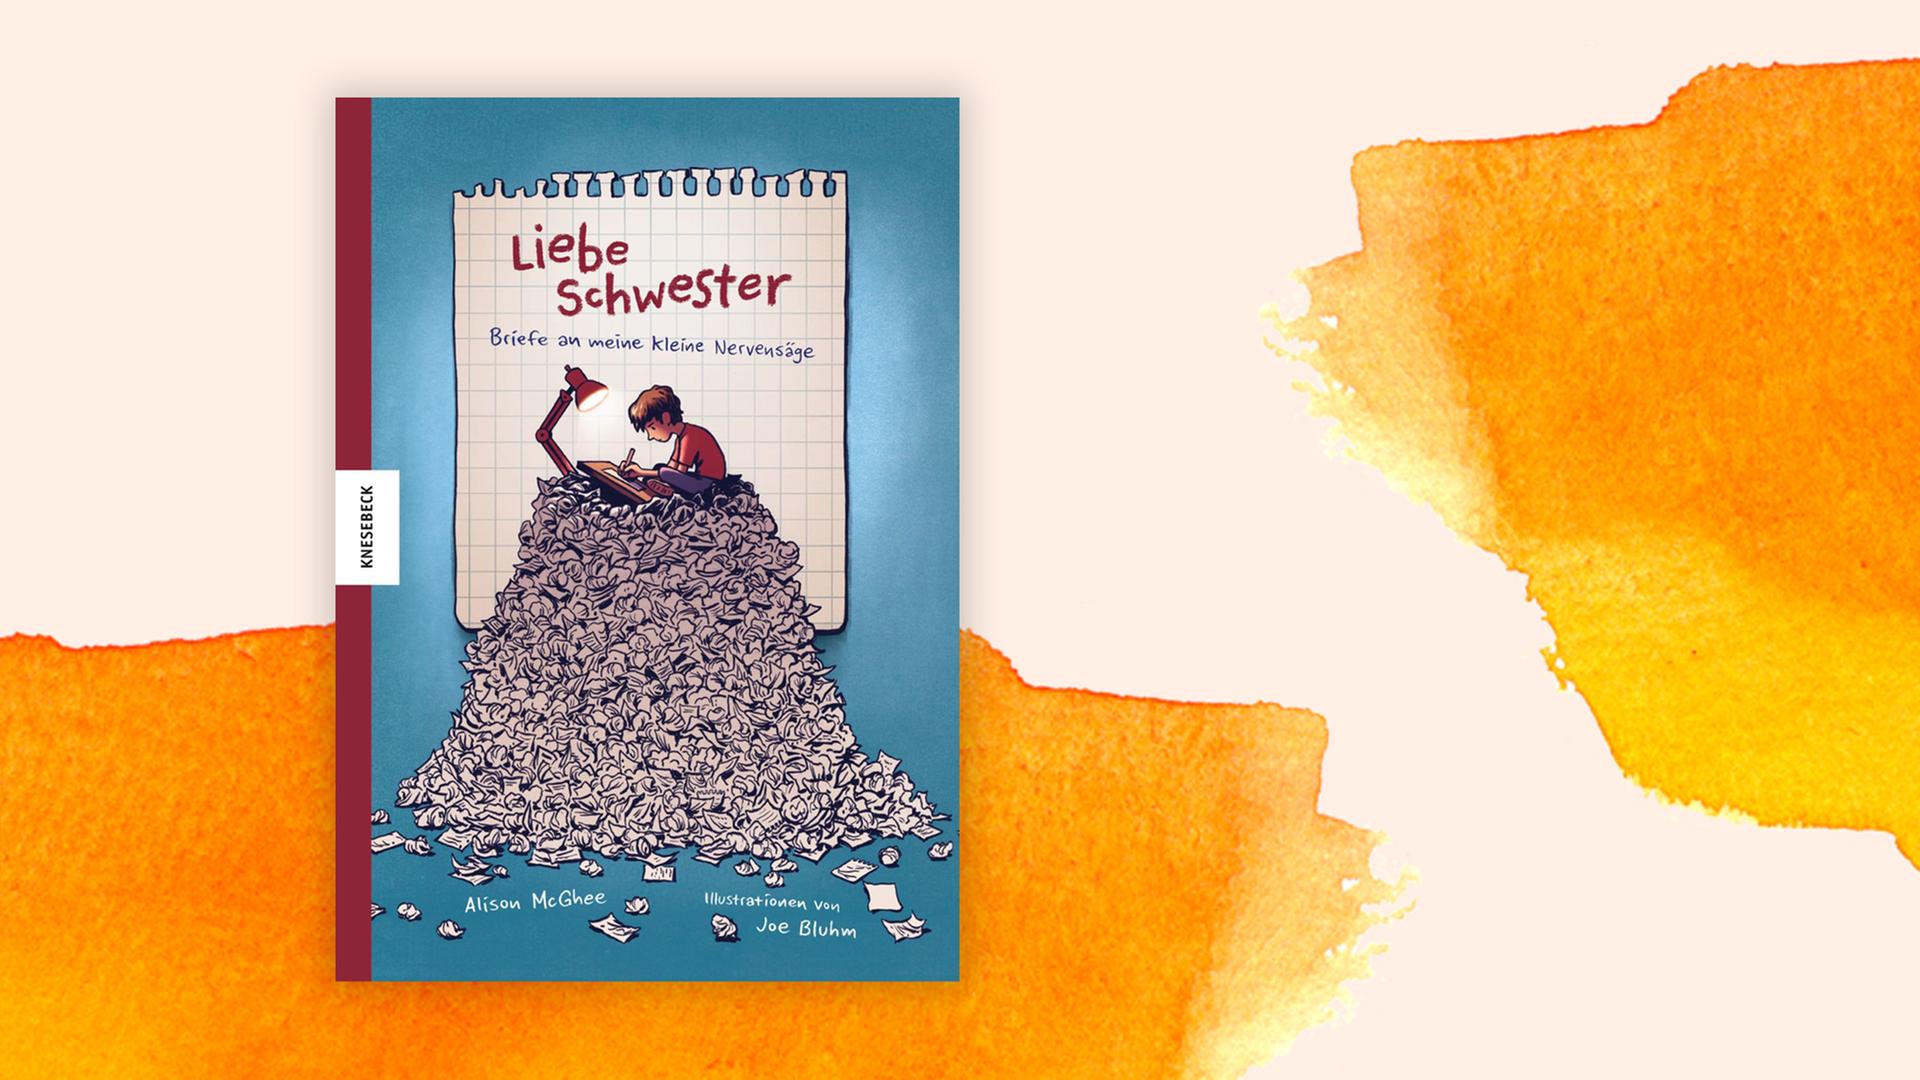 Das Cover zeigt die Illustration von einem Jungen der auf einem Berg aus zerknüllten Briefen sitzt und dabei einen Brief schreibt.